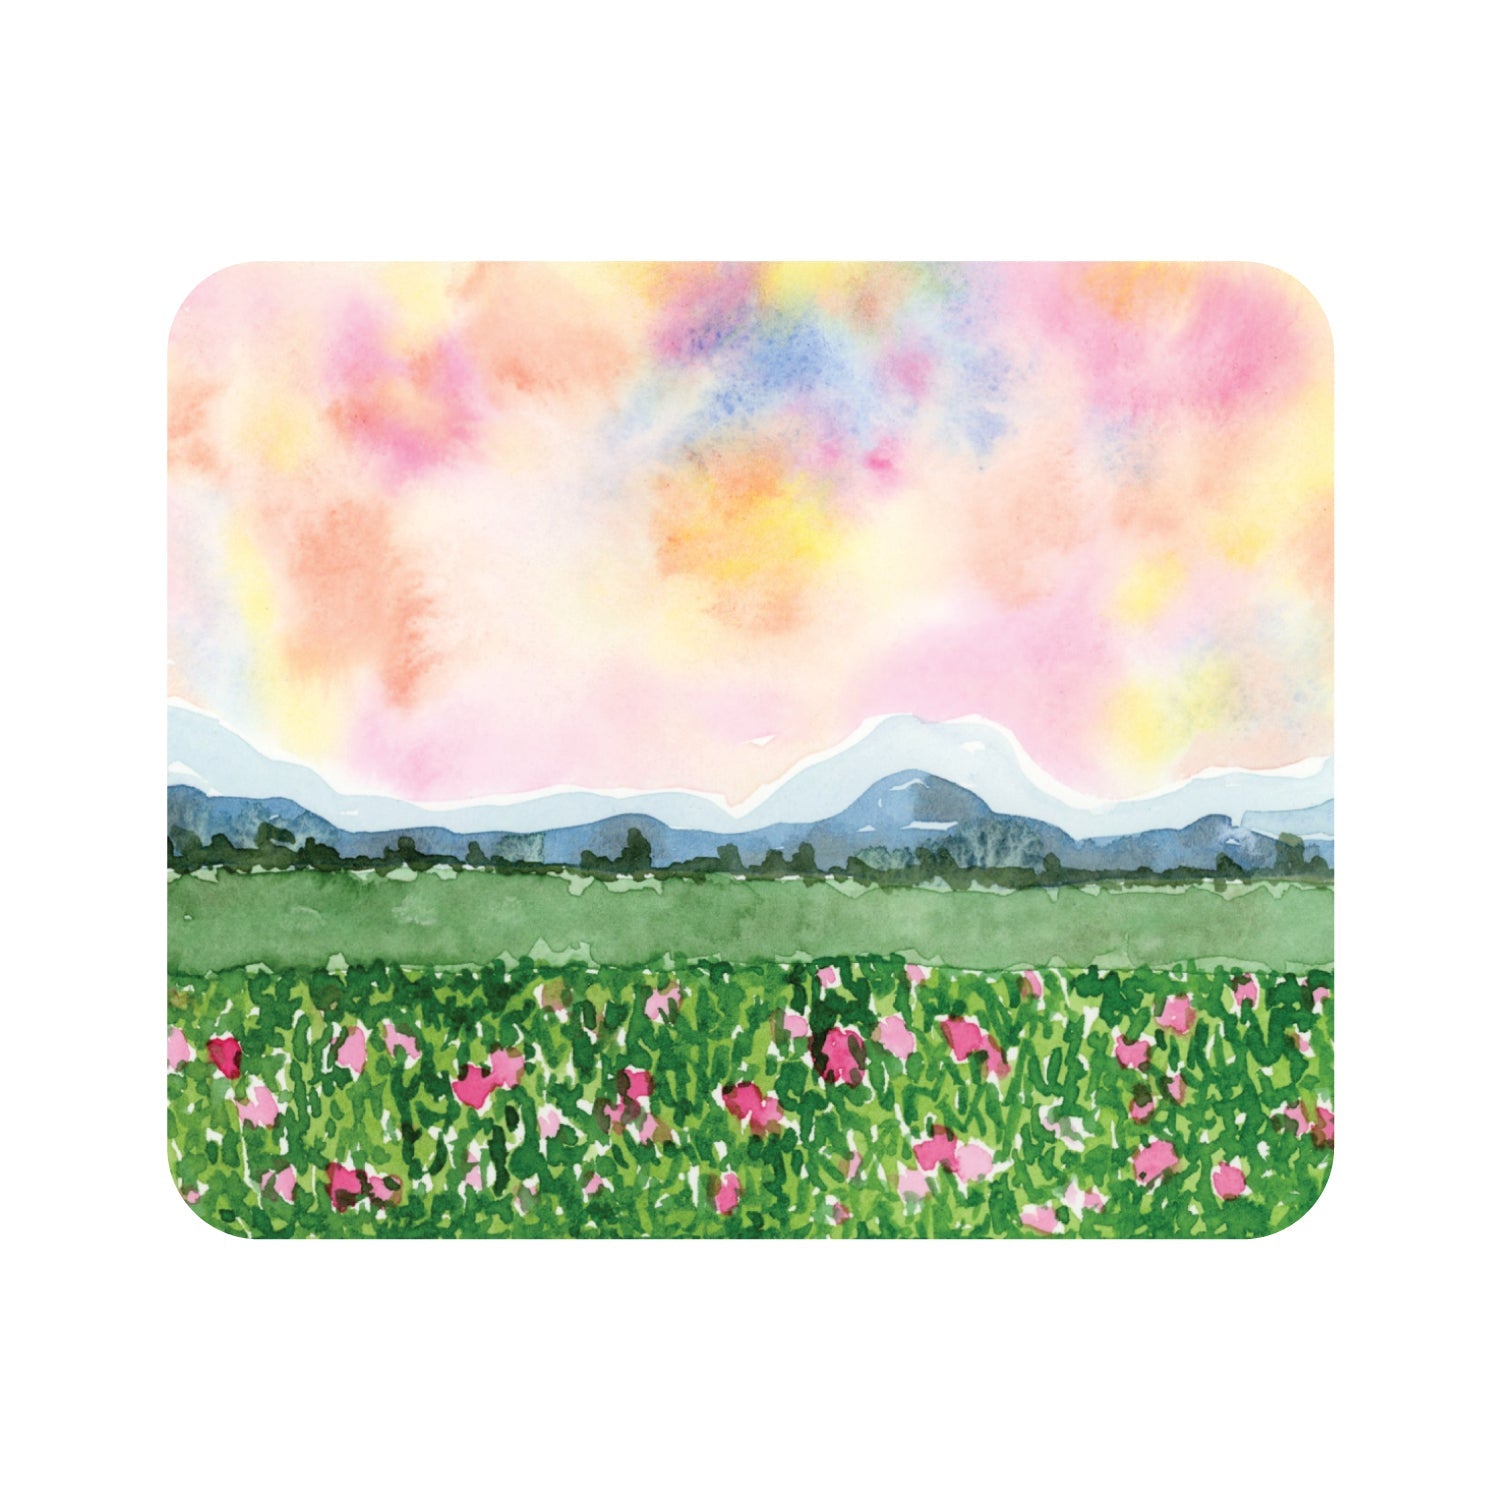 Prints Series Mouse Pad, Watercolor Landscape